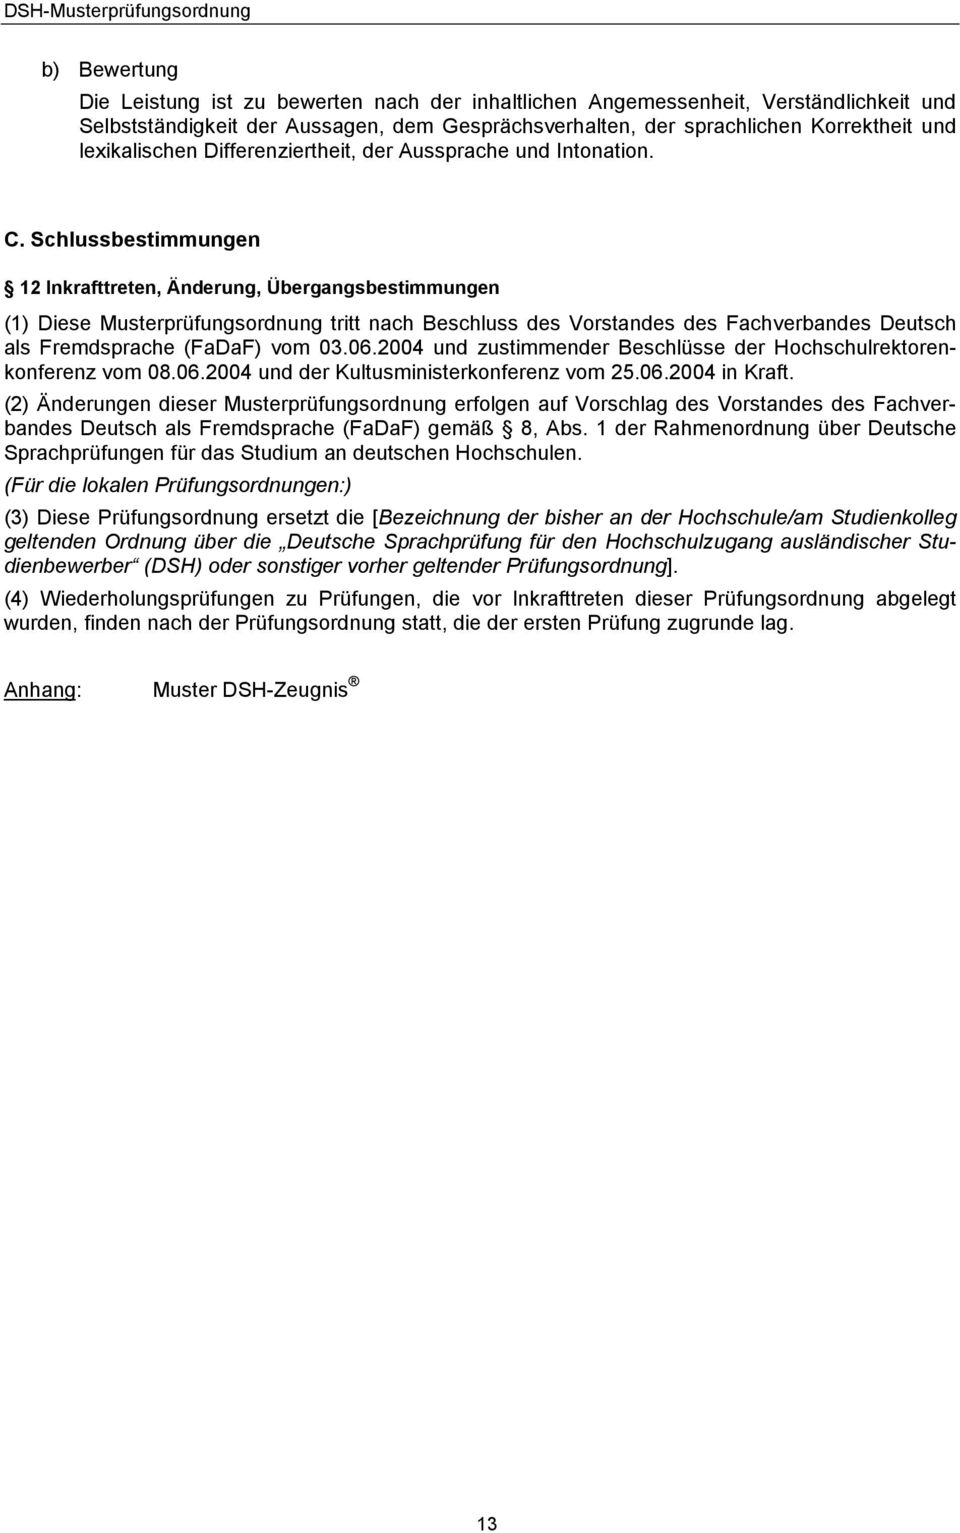 Schlussbestimmungen 12 Inkrafttreten, Änderung, Übergangsbestimmungen (1) Diese Musterprüfungsordnung tritt nach Beschluss des Vorstandes des Fachverbandes Deutsch als Fremdsprache (FaDaF) vom 03.06.